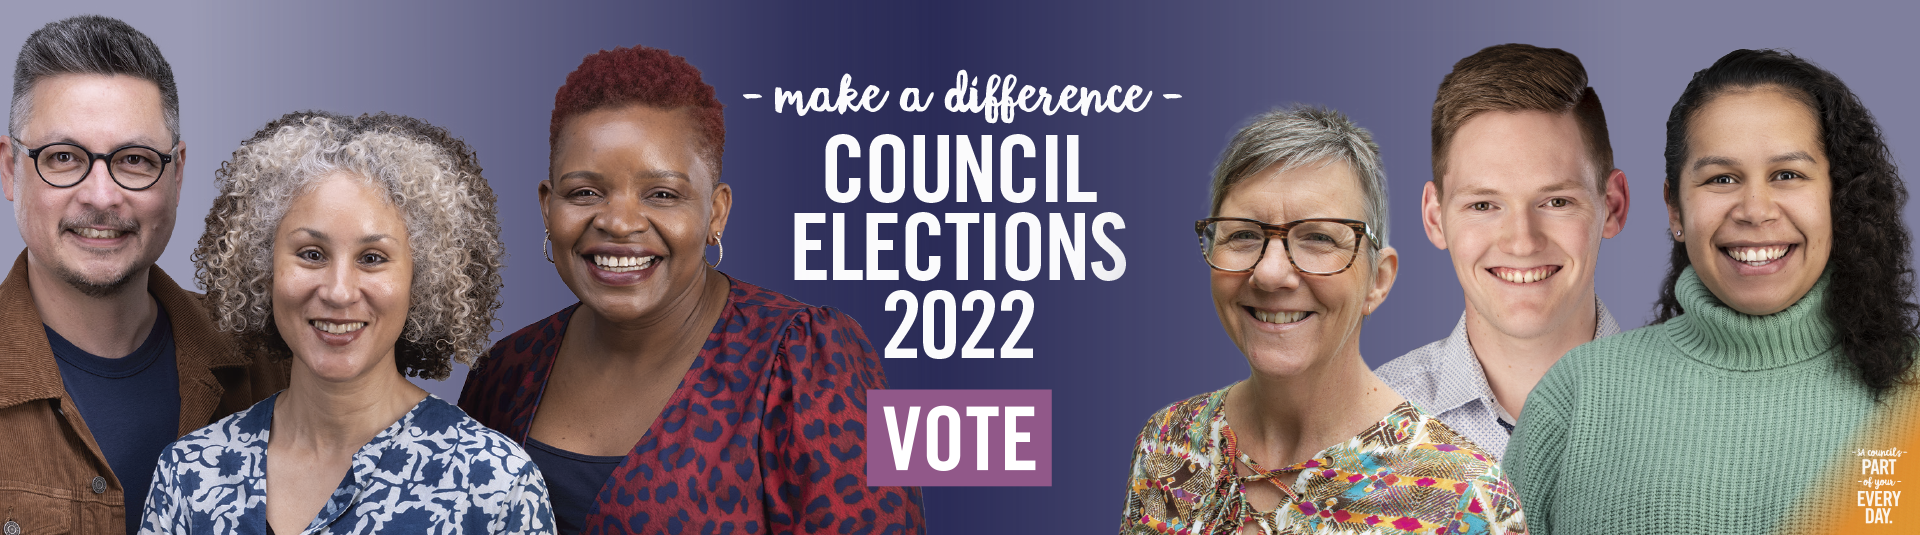 Council Elections 2022 - Vote